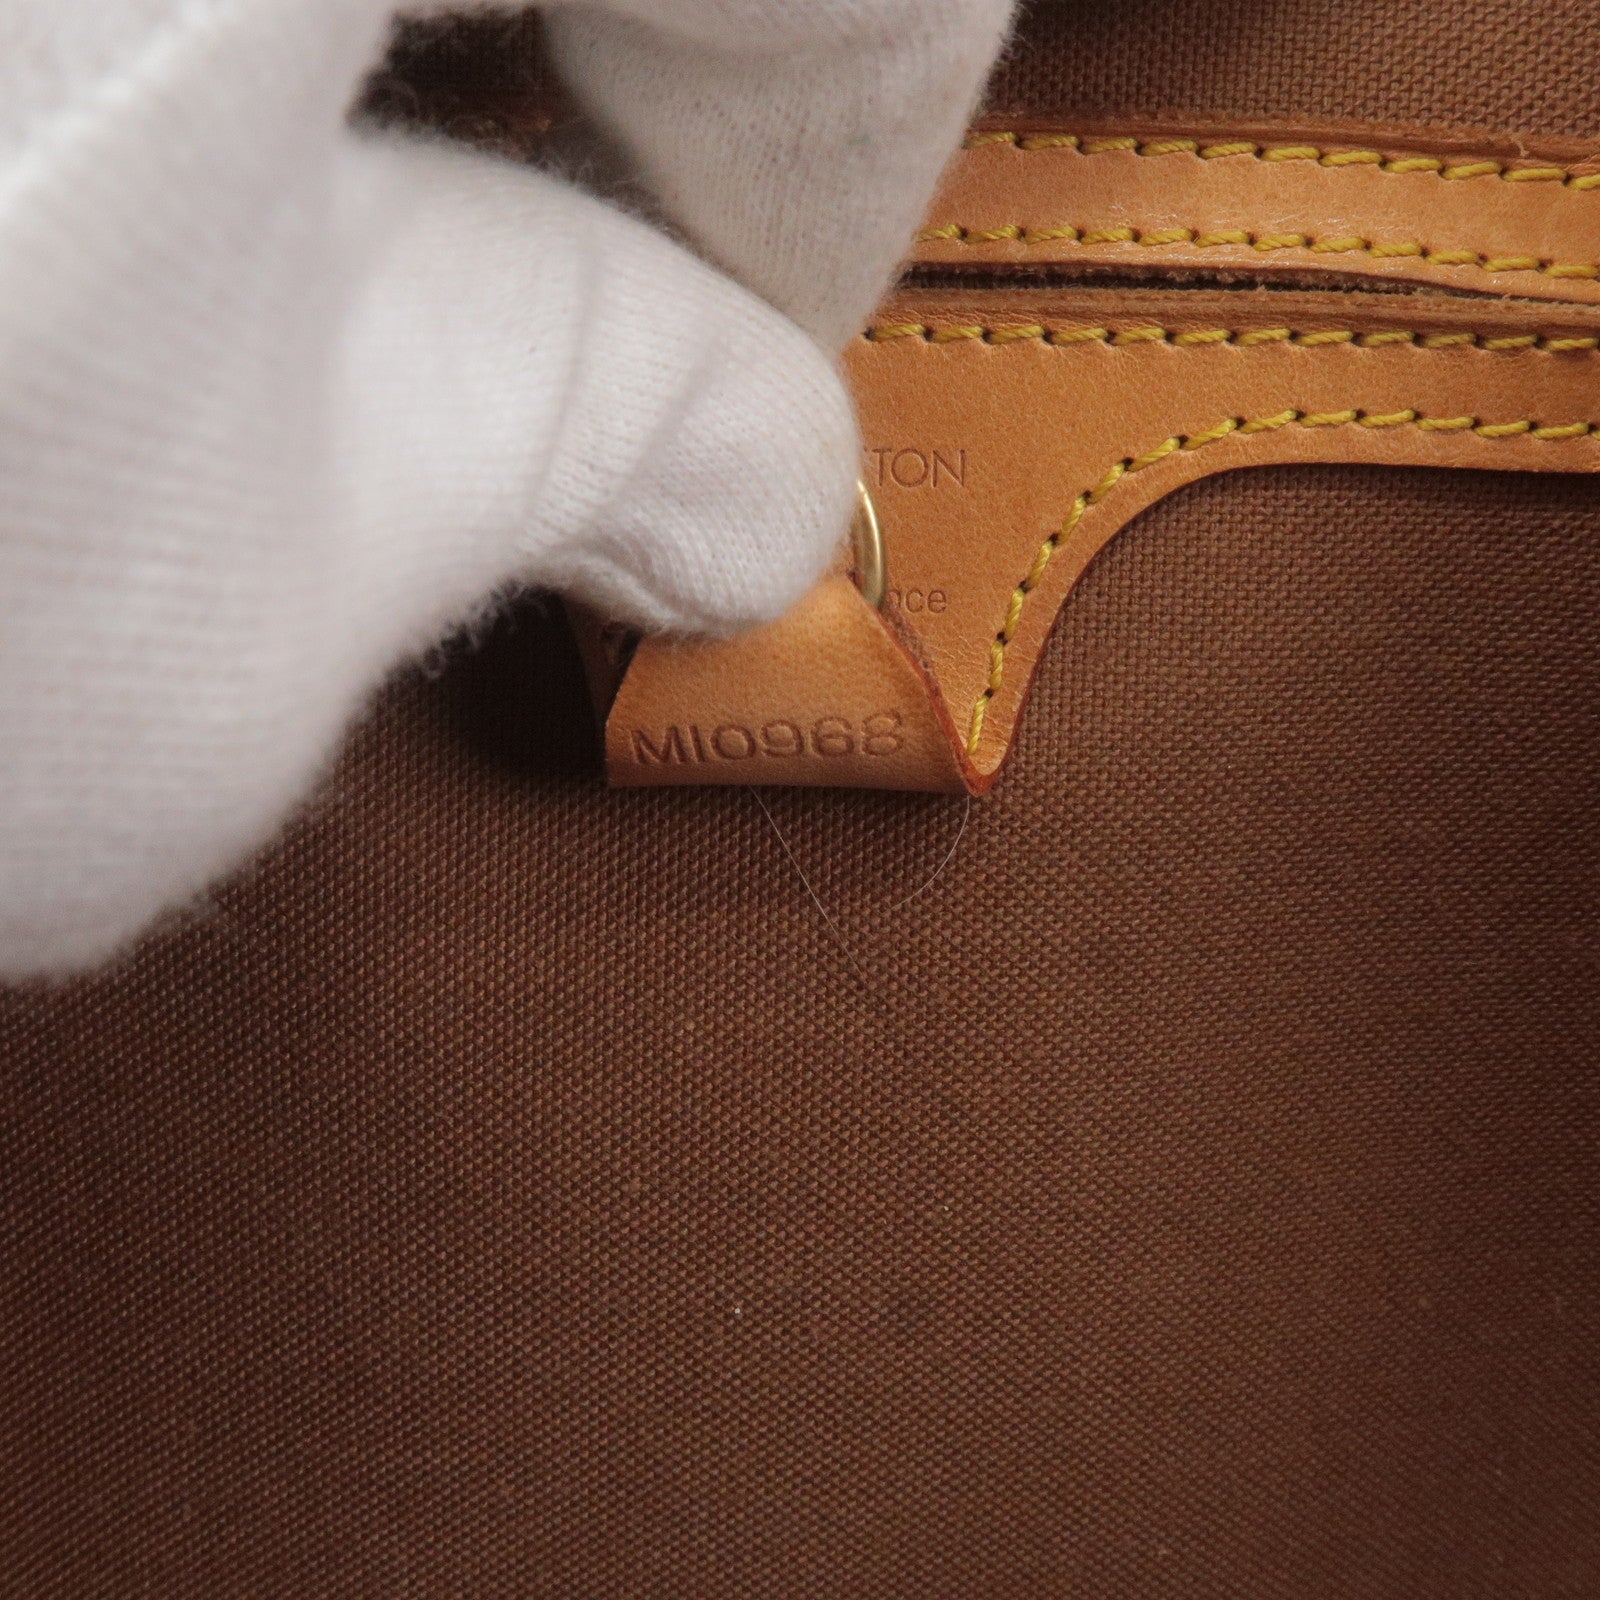 Louis Vuitton Louis Vuitton Leather Strap Shoulder Pad Grip for